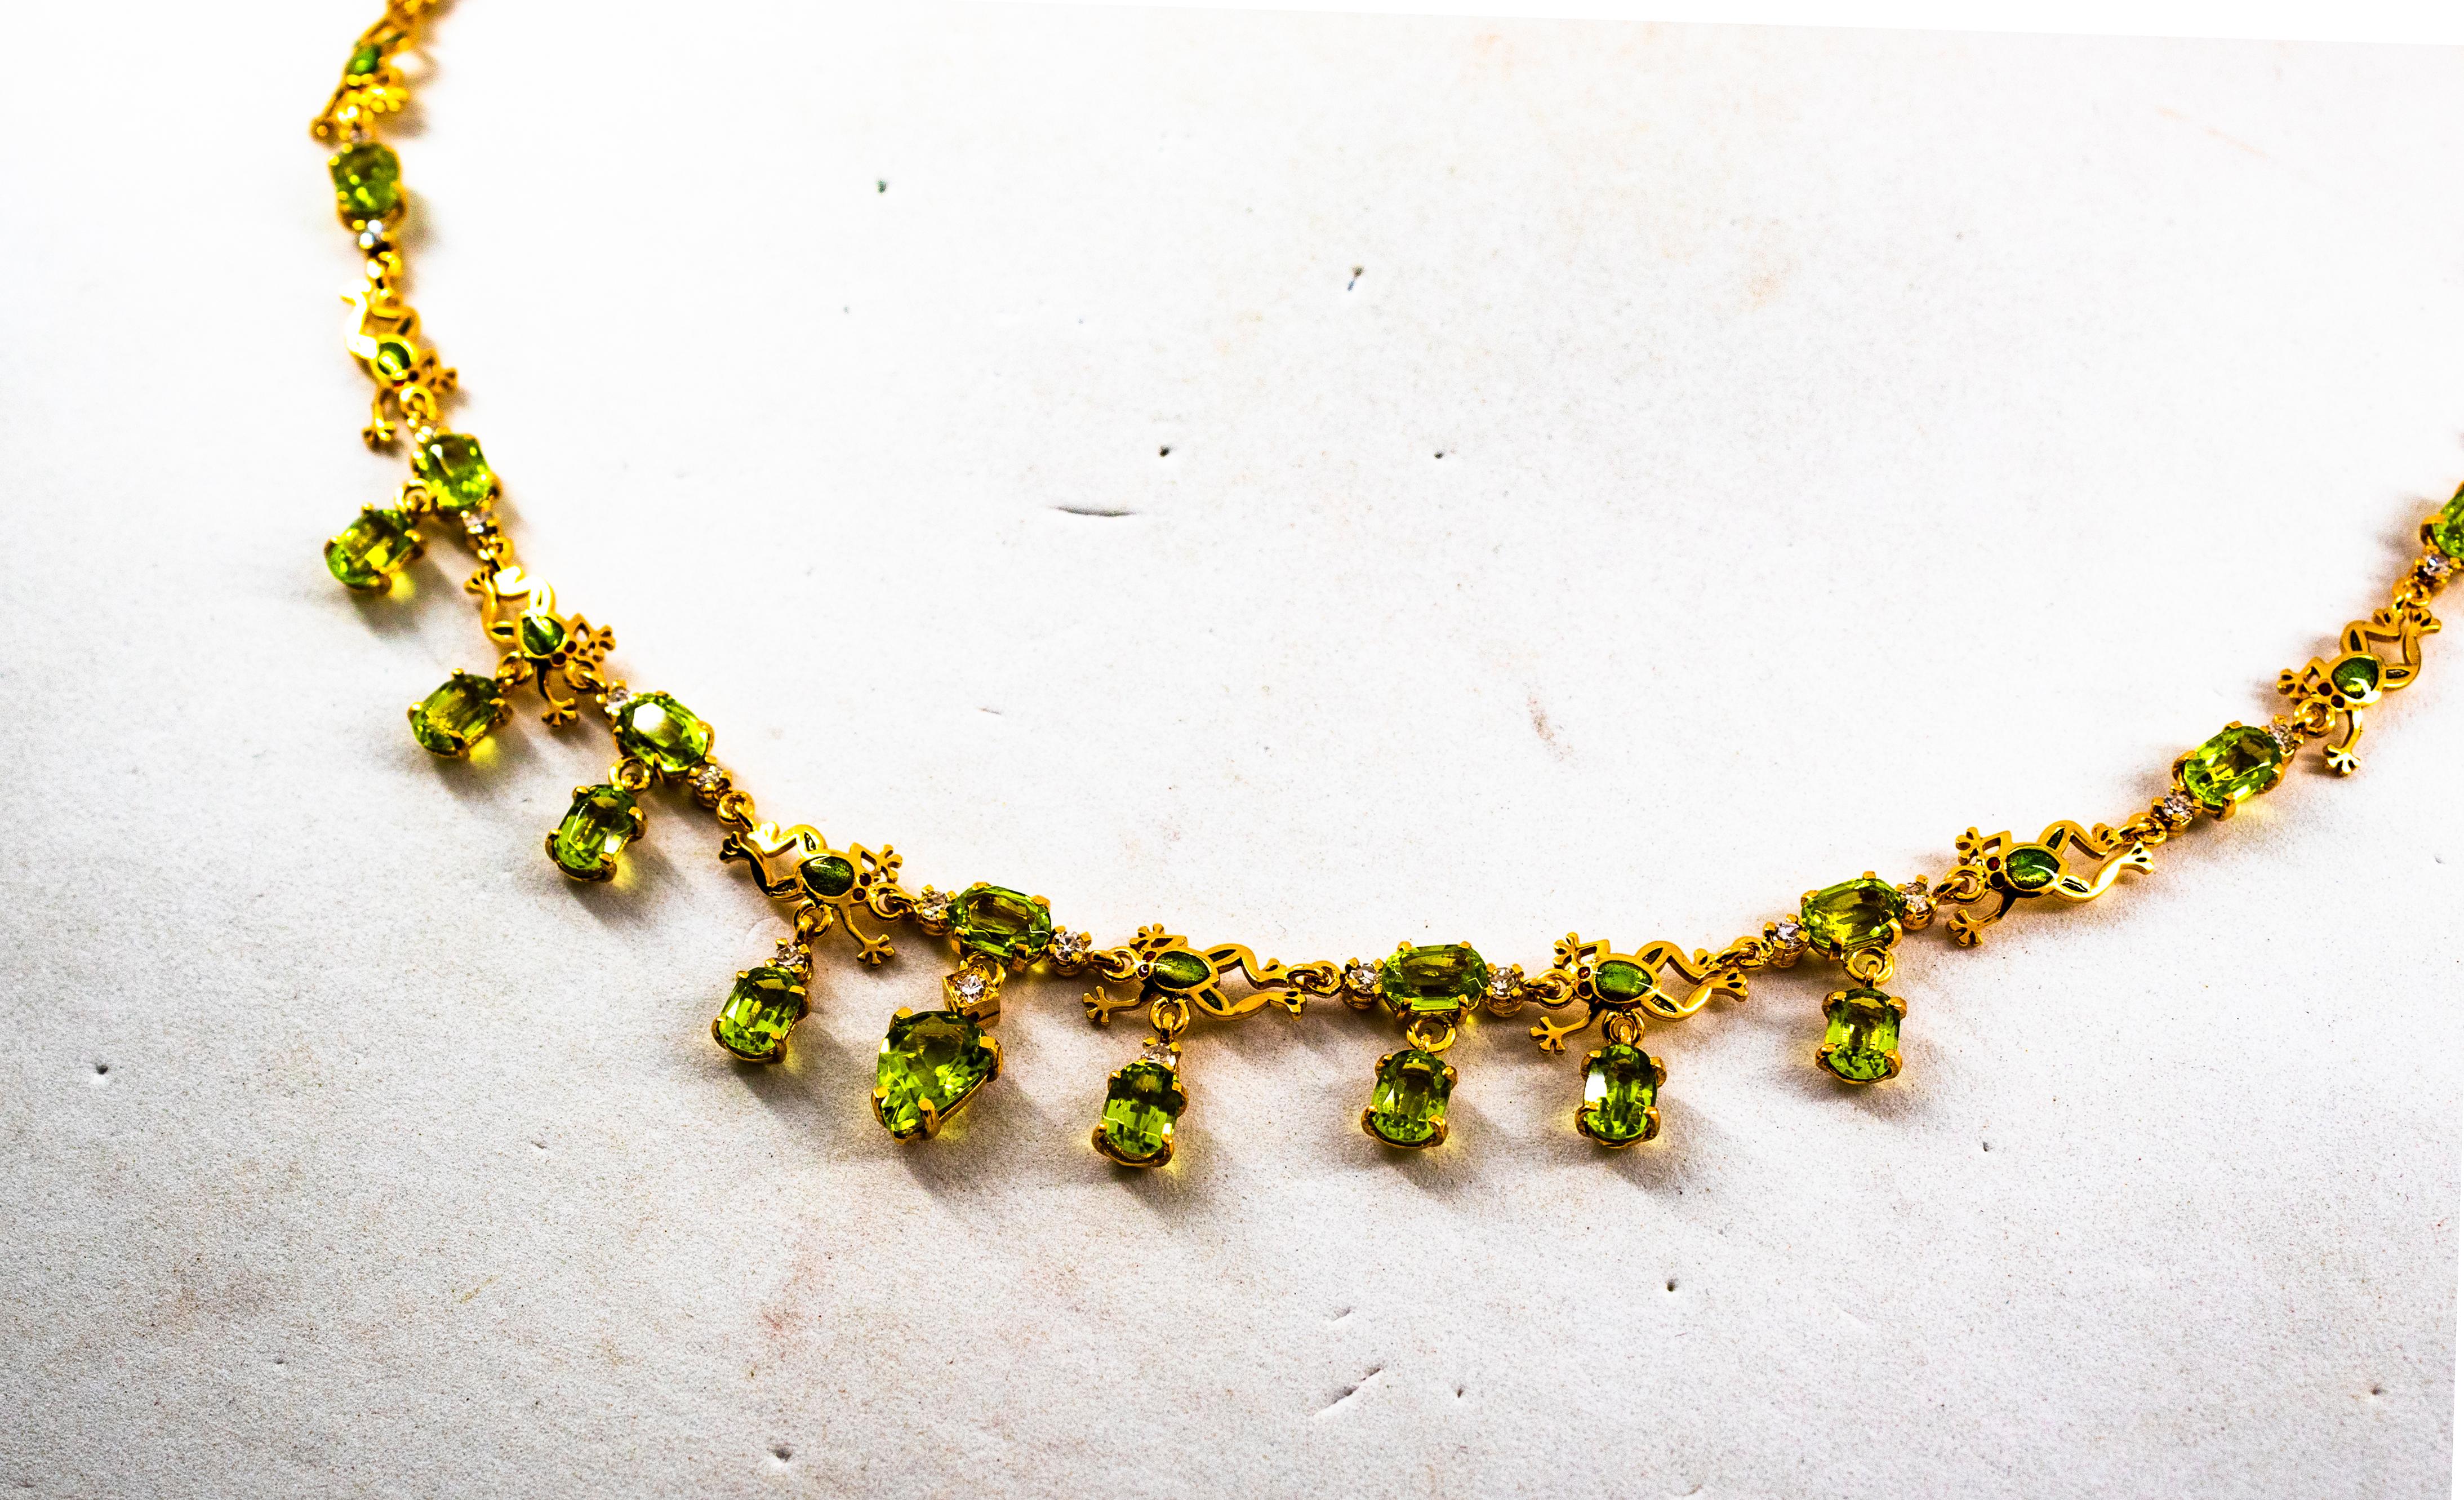 Ce collier est fabriqué en or jaune 9K.
Ce collier contient 0,59 carats de diamants blancs taille brillant.
Ce collier contient 16,90 carats de péridots.
Ce collier est en émail vert.

Ce collier est inspiré de l'Art déco.

Ce collier est également